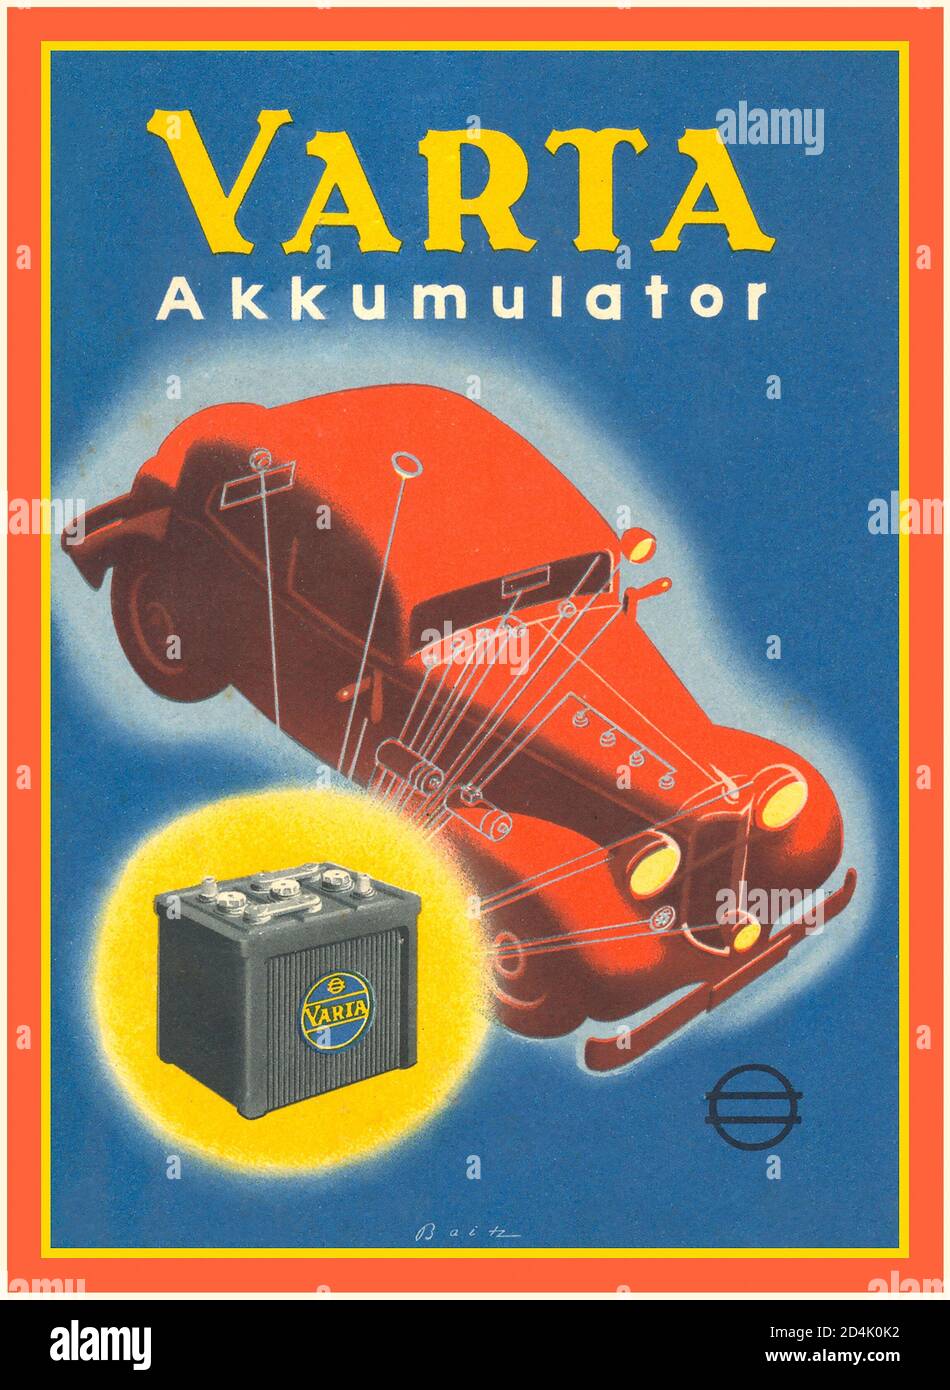 VARTA Autobatterie 'Akkumulator' Werbeplakat aus den 20er Jahren. VARTA German Batteries bietet seit über 100 Jahren weltweit fortschrittliche Technologie, leistungsstarke Leistung und außergewöhnlichen Service. Stockfoto